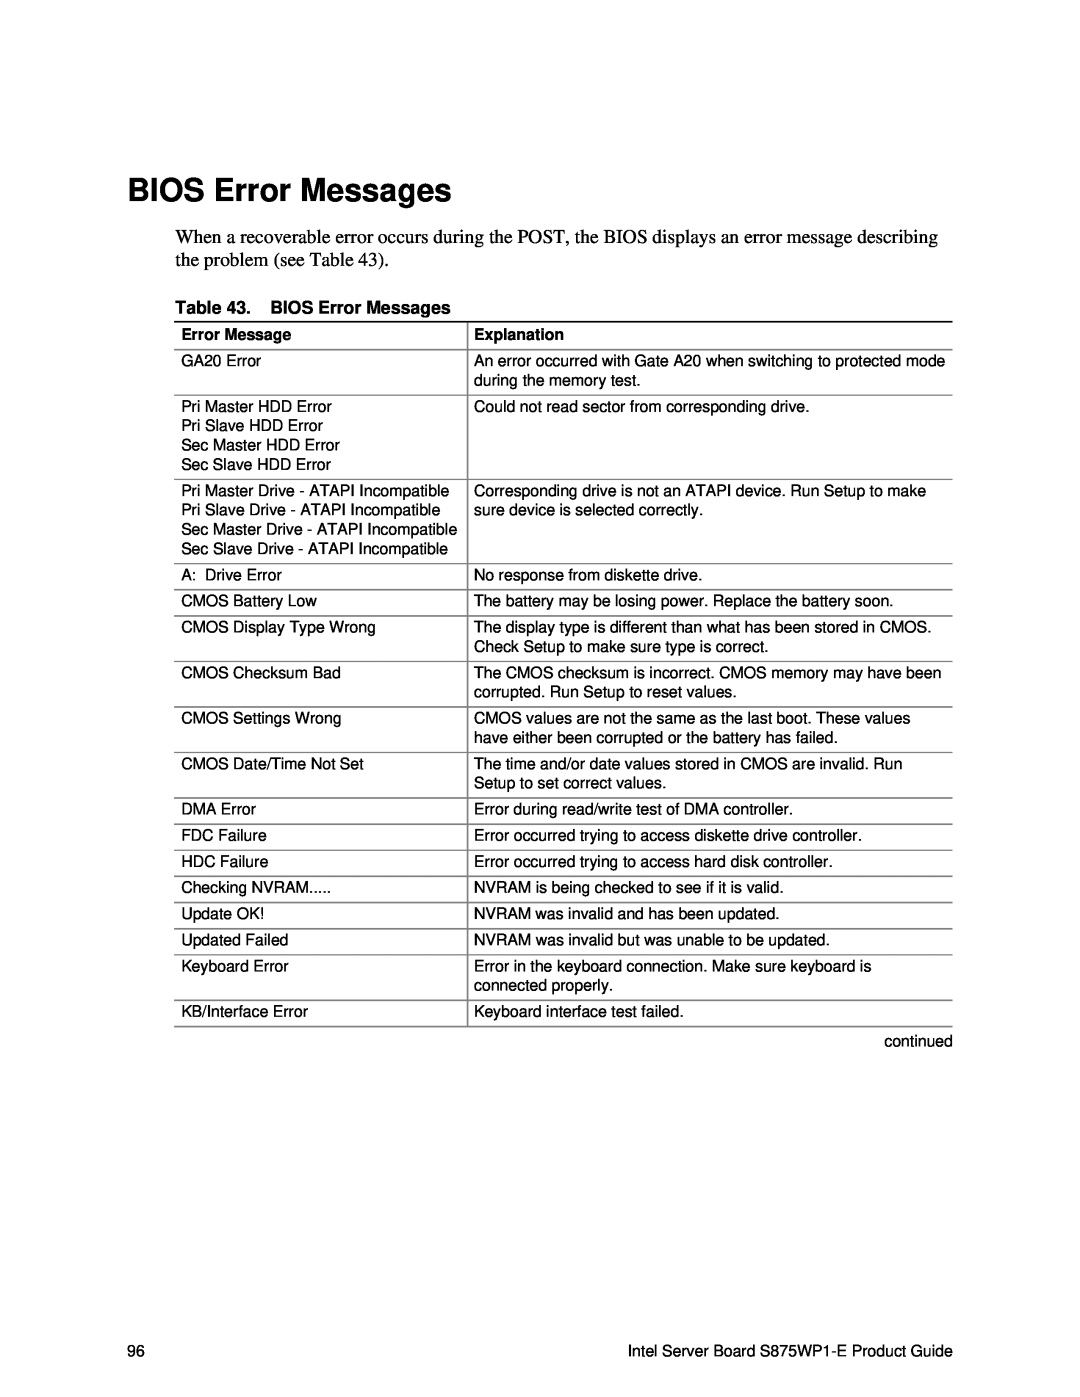 Intel S875WP1-E manual BIOS Error Messages 